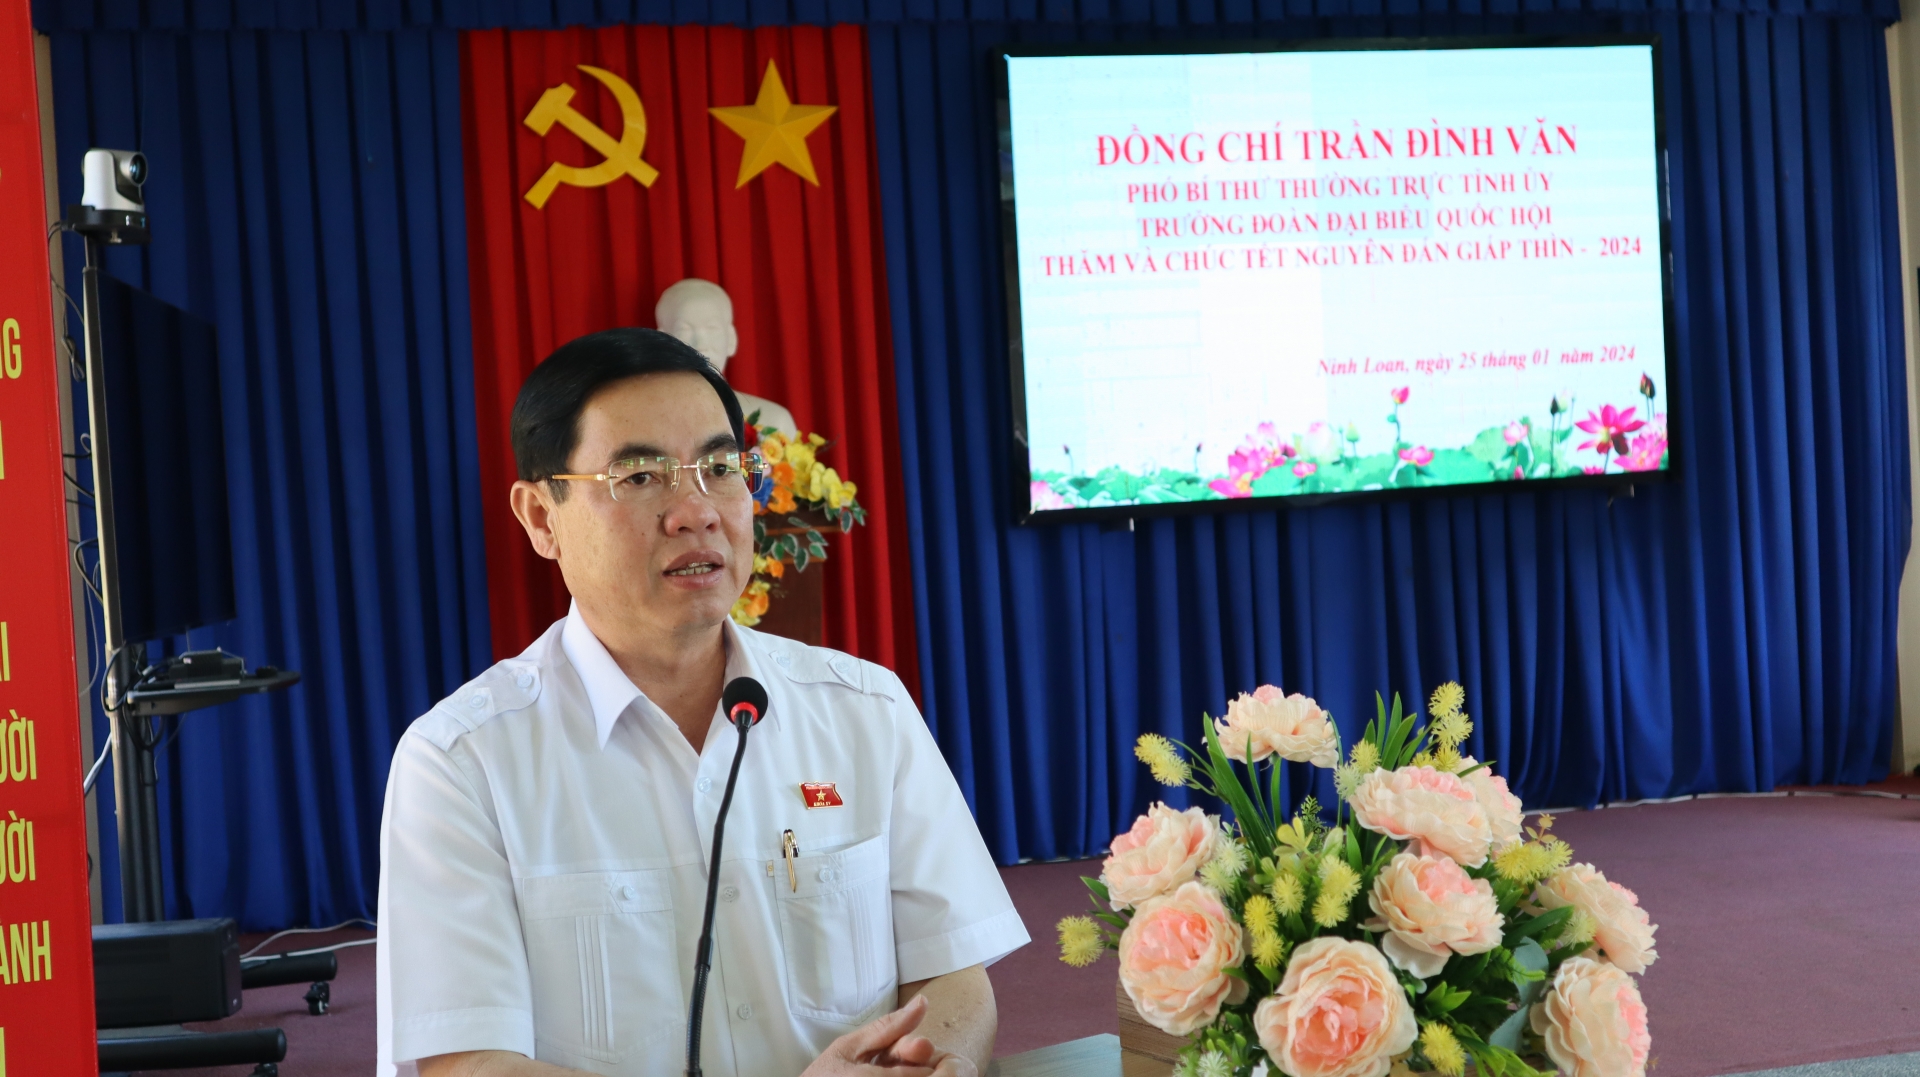 đồng chí Trần Đình Văn – Phó Bí thư Thường trực Tỉnh ủy, Trưởng đoàn đại biểu Quốc hội đơn vị tỉnh Lâm Đồng, phát biểu